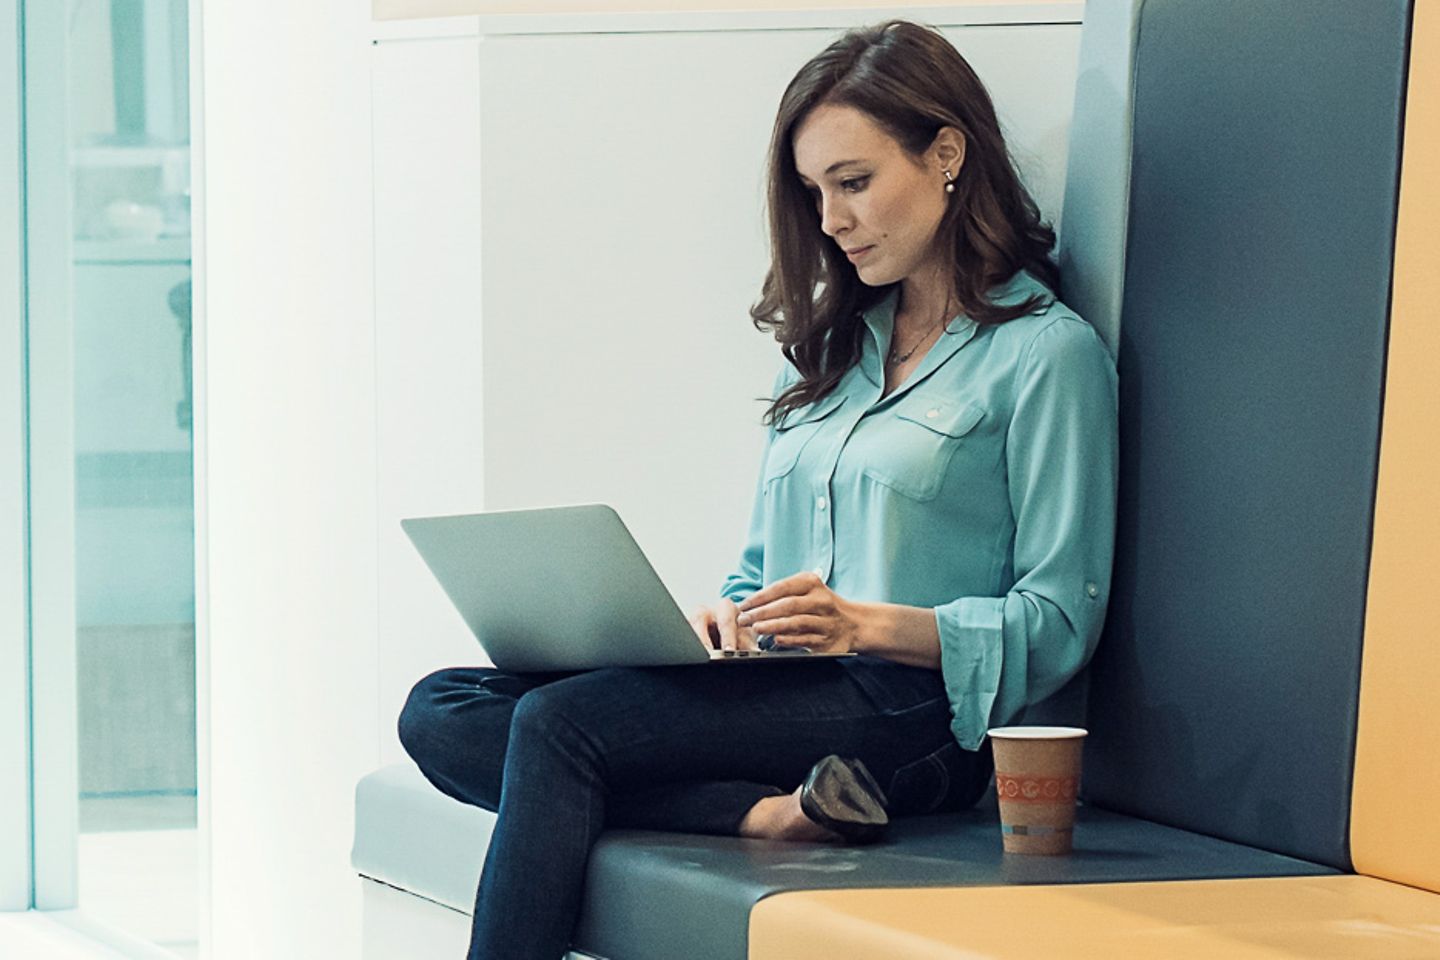 Mujer joven sentada con un portátil sobre el regazo en un pasillo iluminado de una oficina